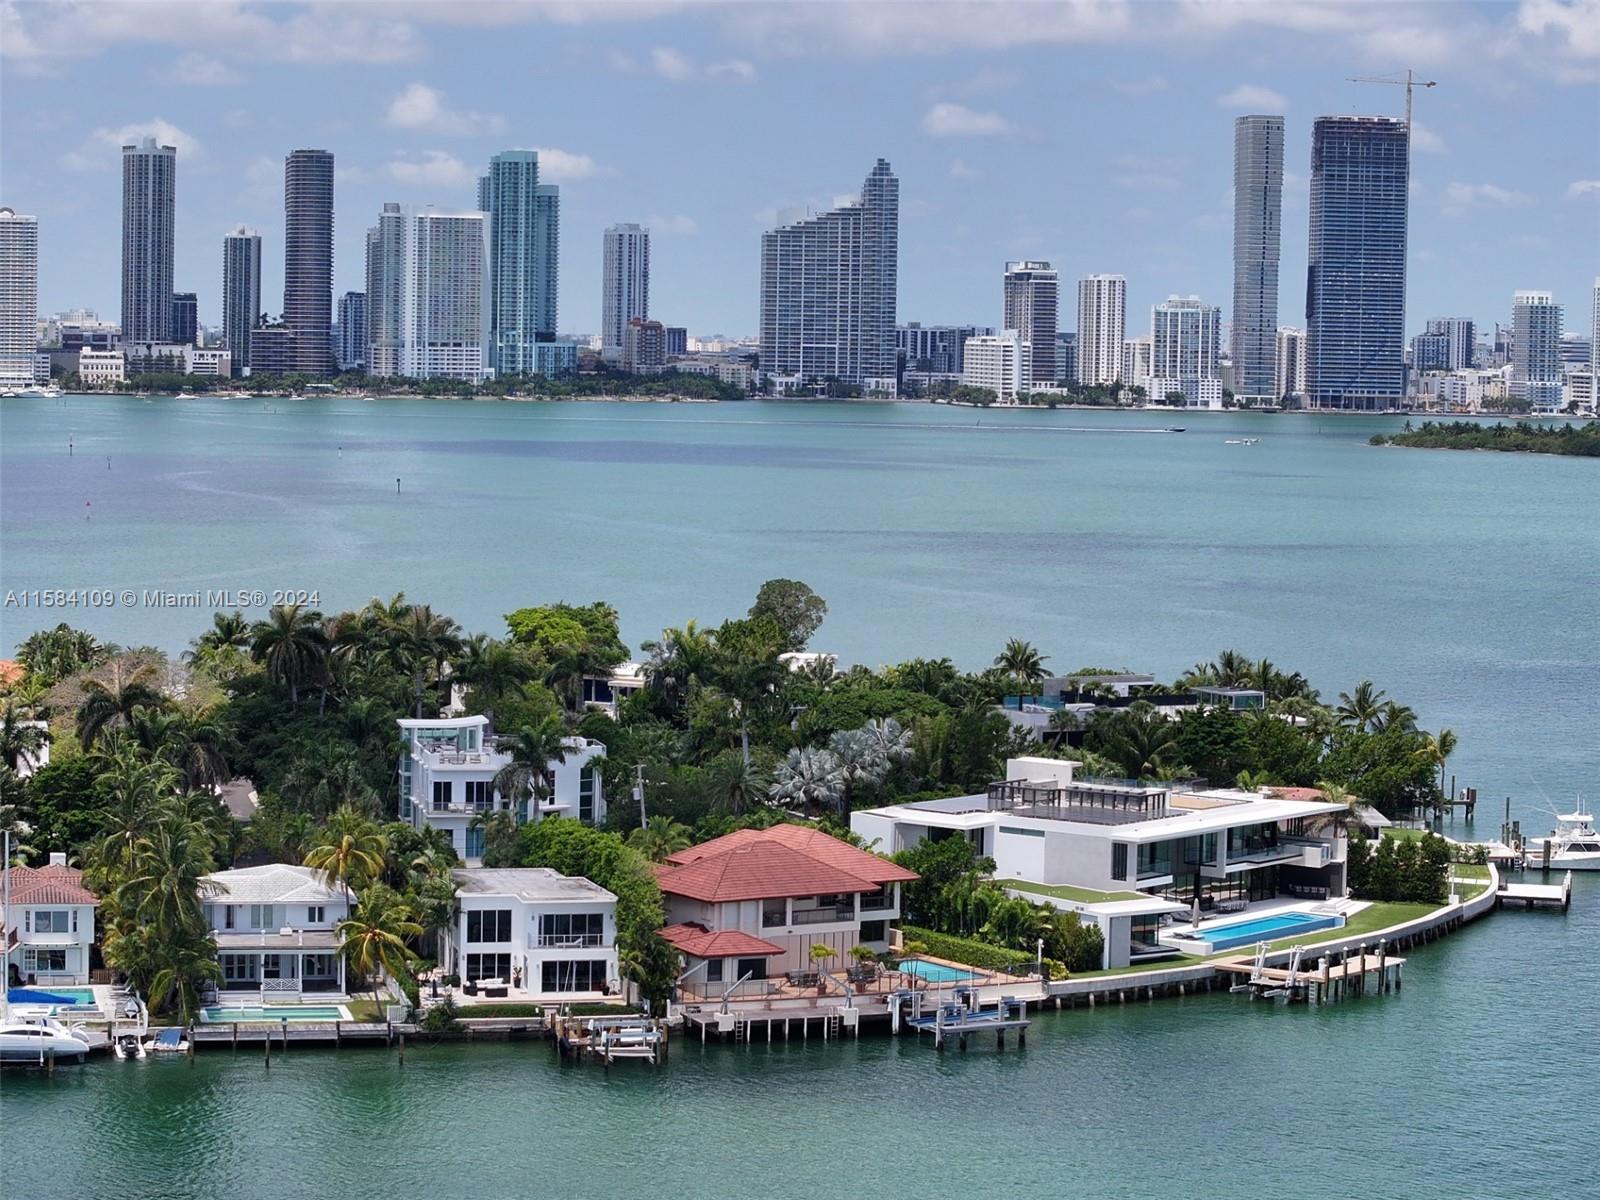 Property for Sale at 409 E San Marino Dr, Miami Beach, Miami-Dade County, Florida - Bedrooms: 6 
Bathrooms: 5  - $14,950,000